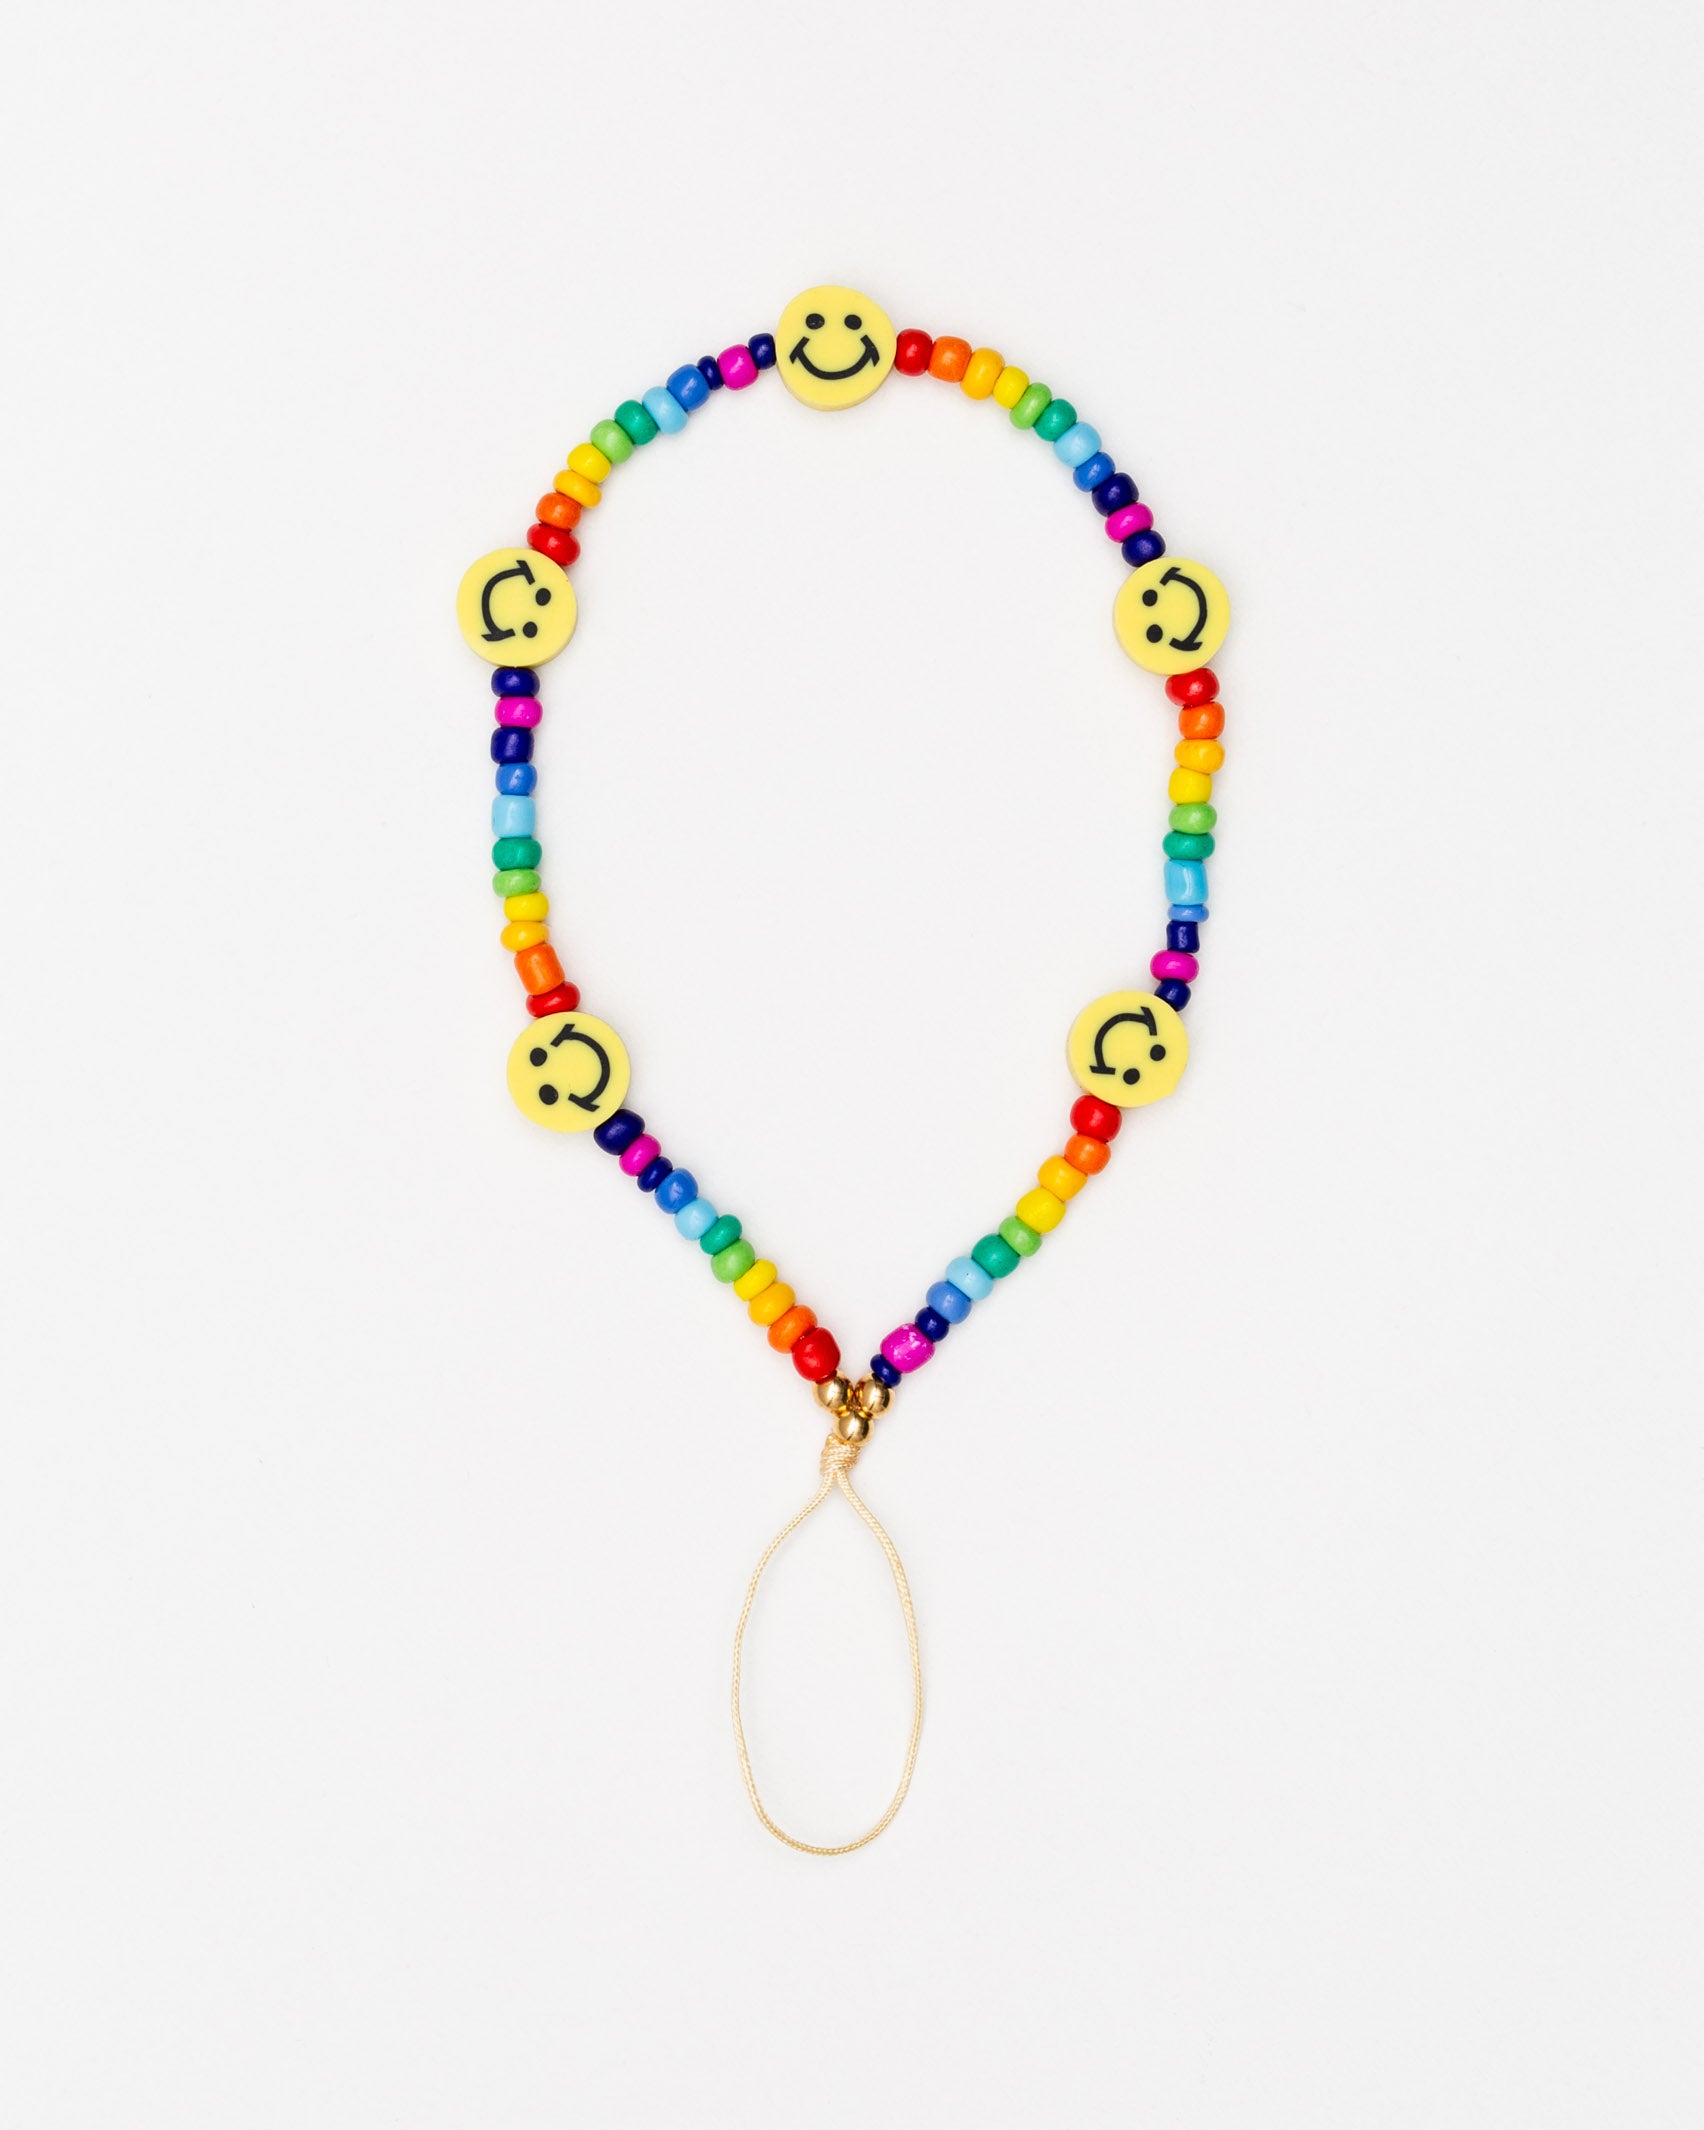 Handykette mit bunten Perlen und lächelnden Emojis - Broke + Schön#farbe_rainbow